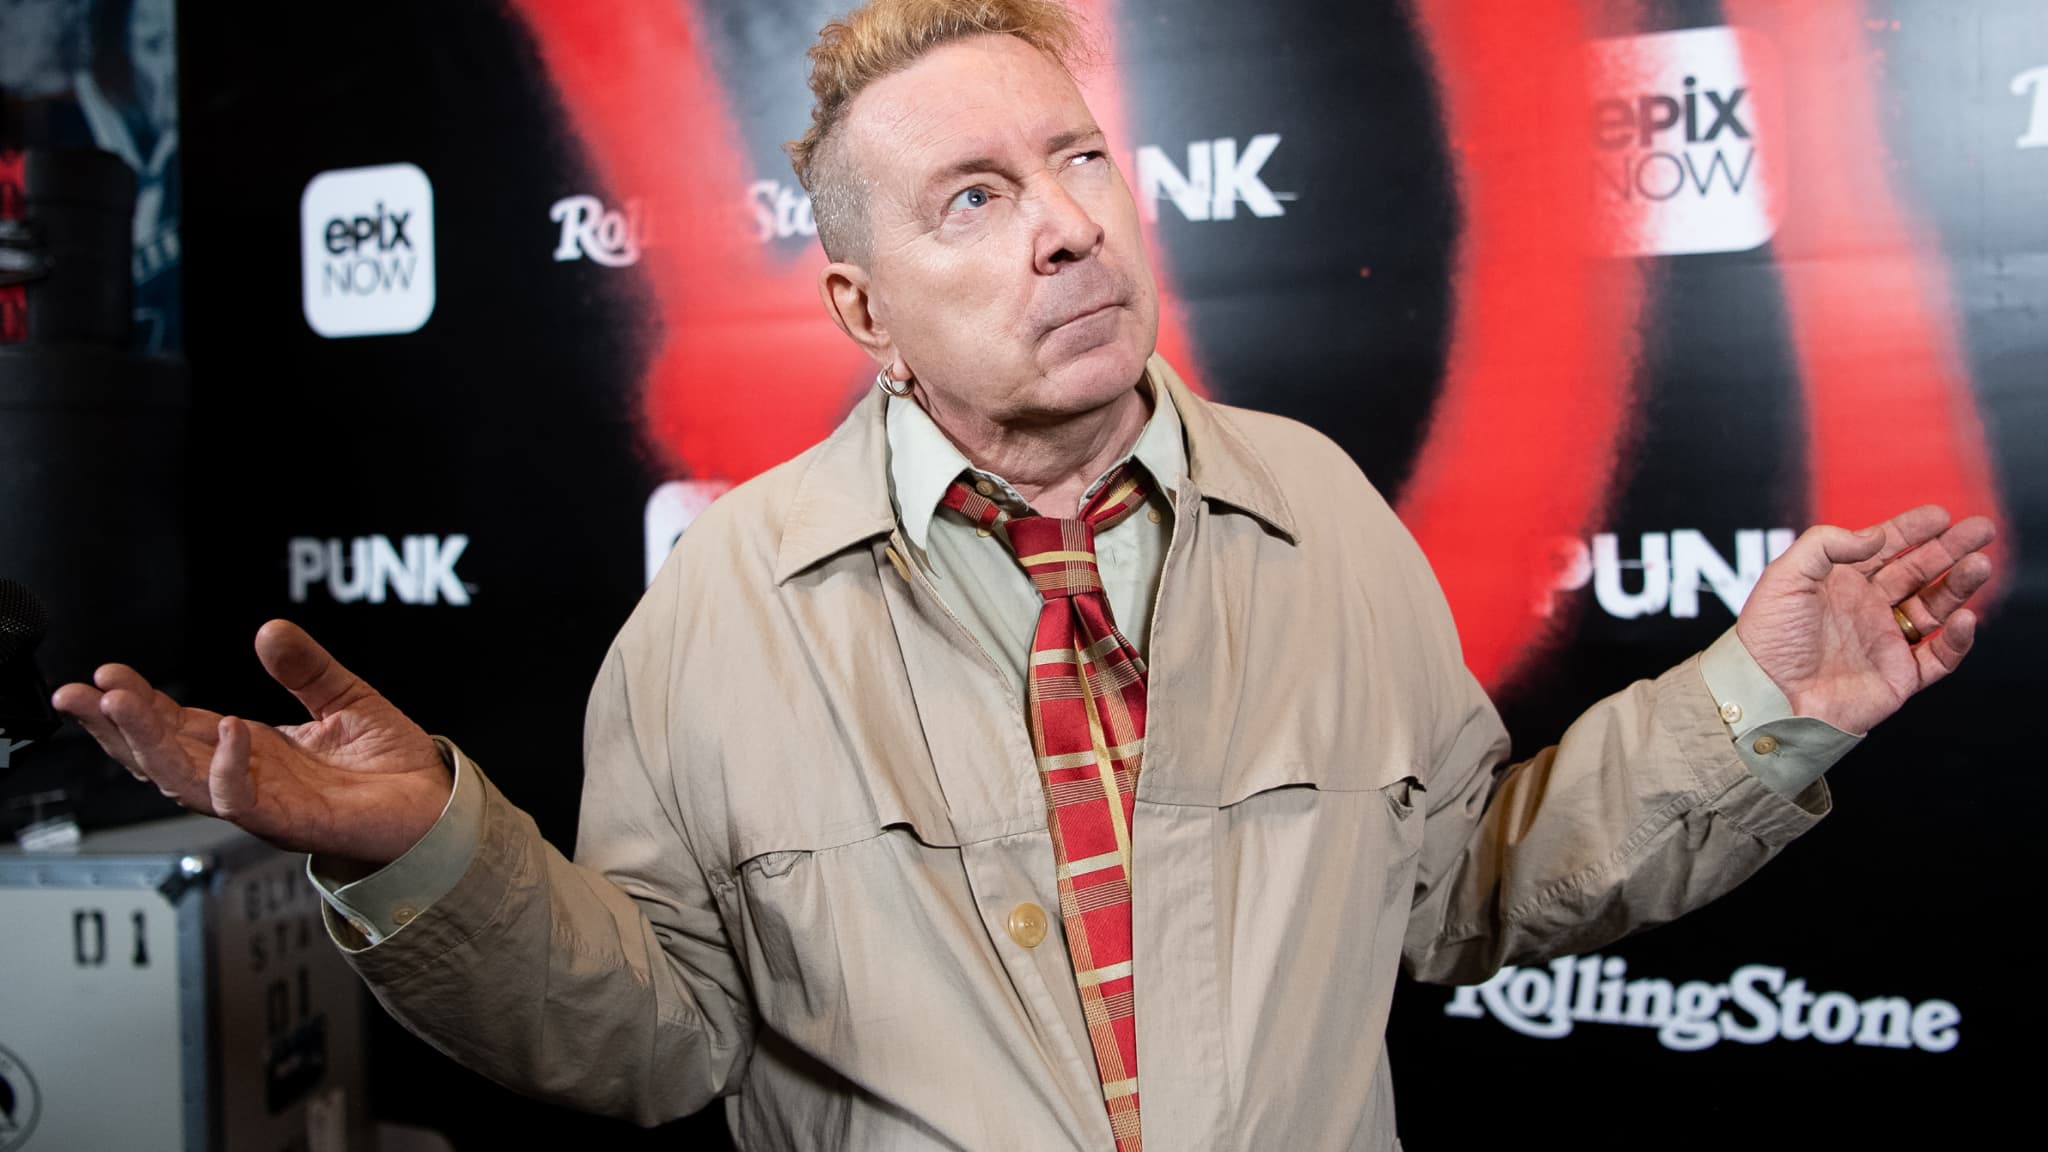 L'ex-punk chanteur des Sex Pistols John Lydon roule pour Donald Trump